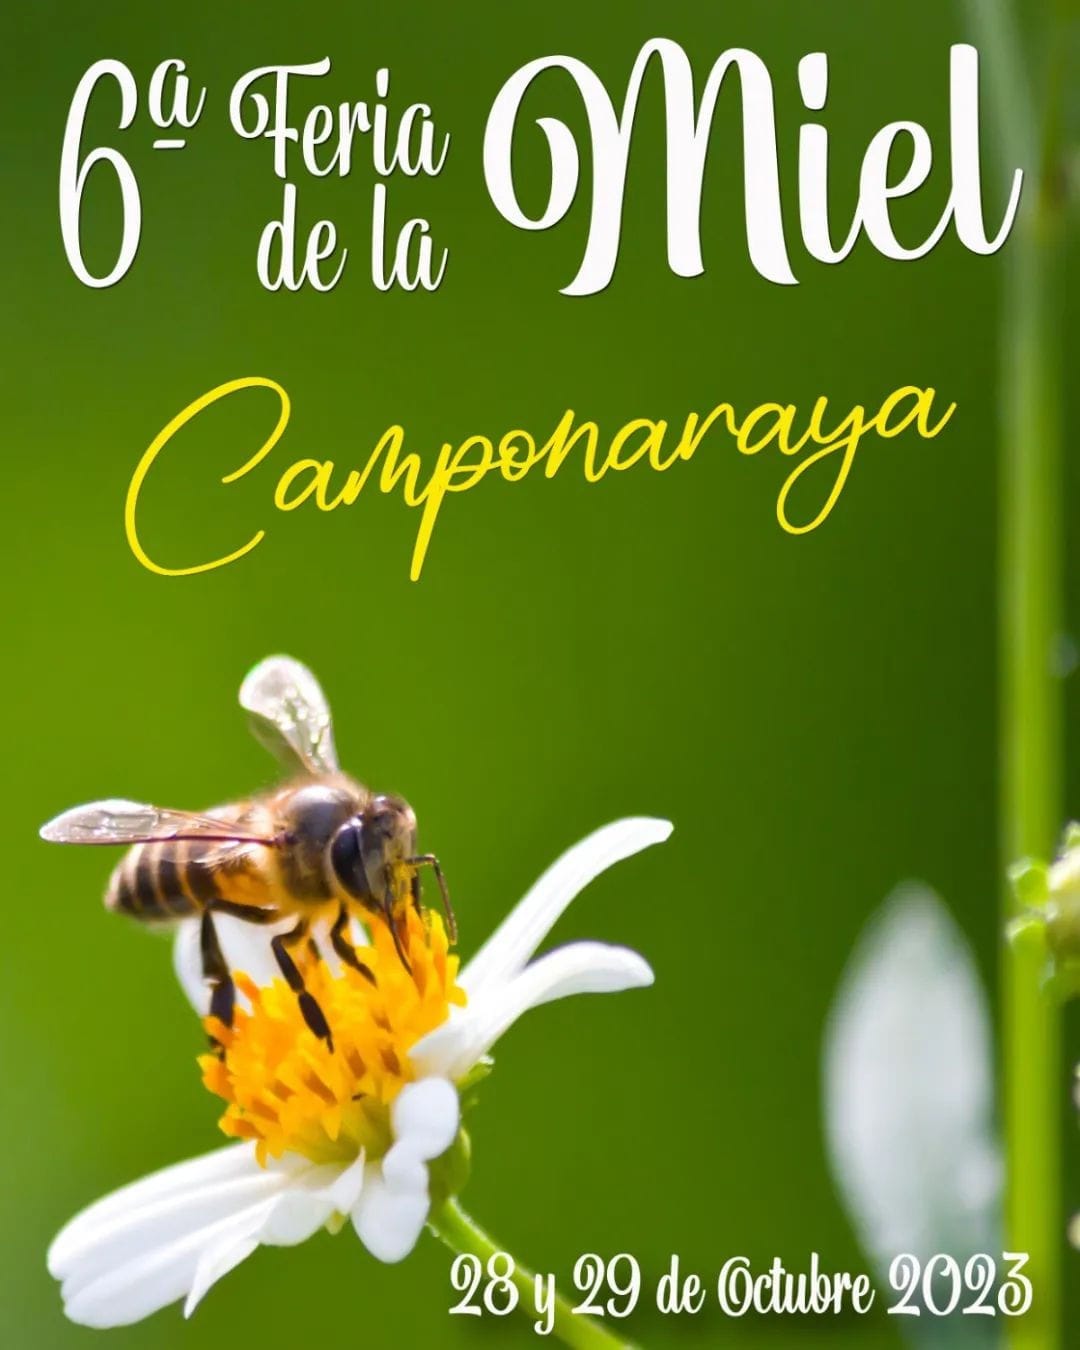 La 6ª edición de la Feria de la Miel llega a Camponaraya con total incertidumbre en el sector 3